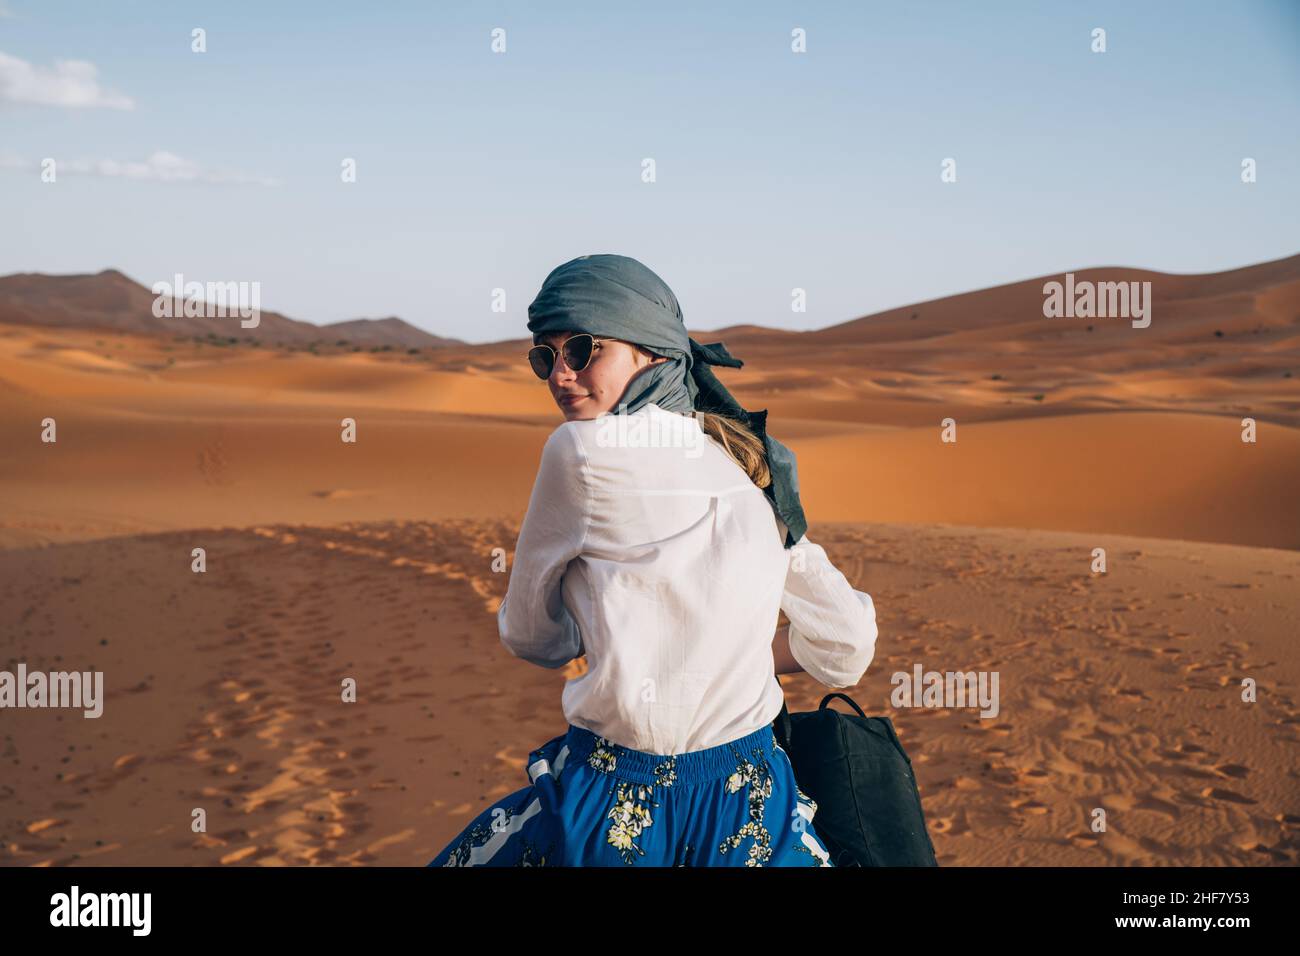 Das junge Mädchen mit Kopftuch und Sonnenbrille reitet auf einem Dromedar  durch die Wüste Erg chebbi Sahara in Marokko Stockfotografie - Alamy